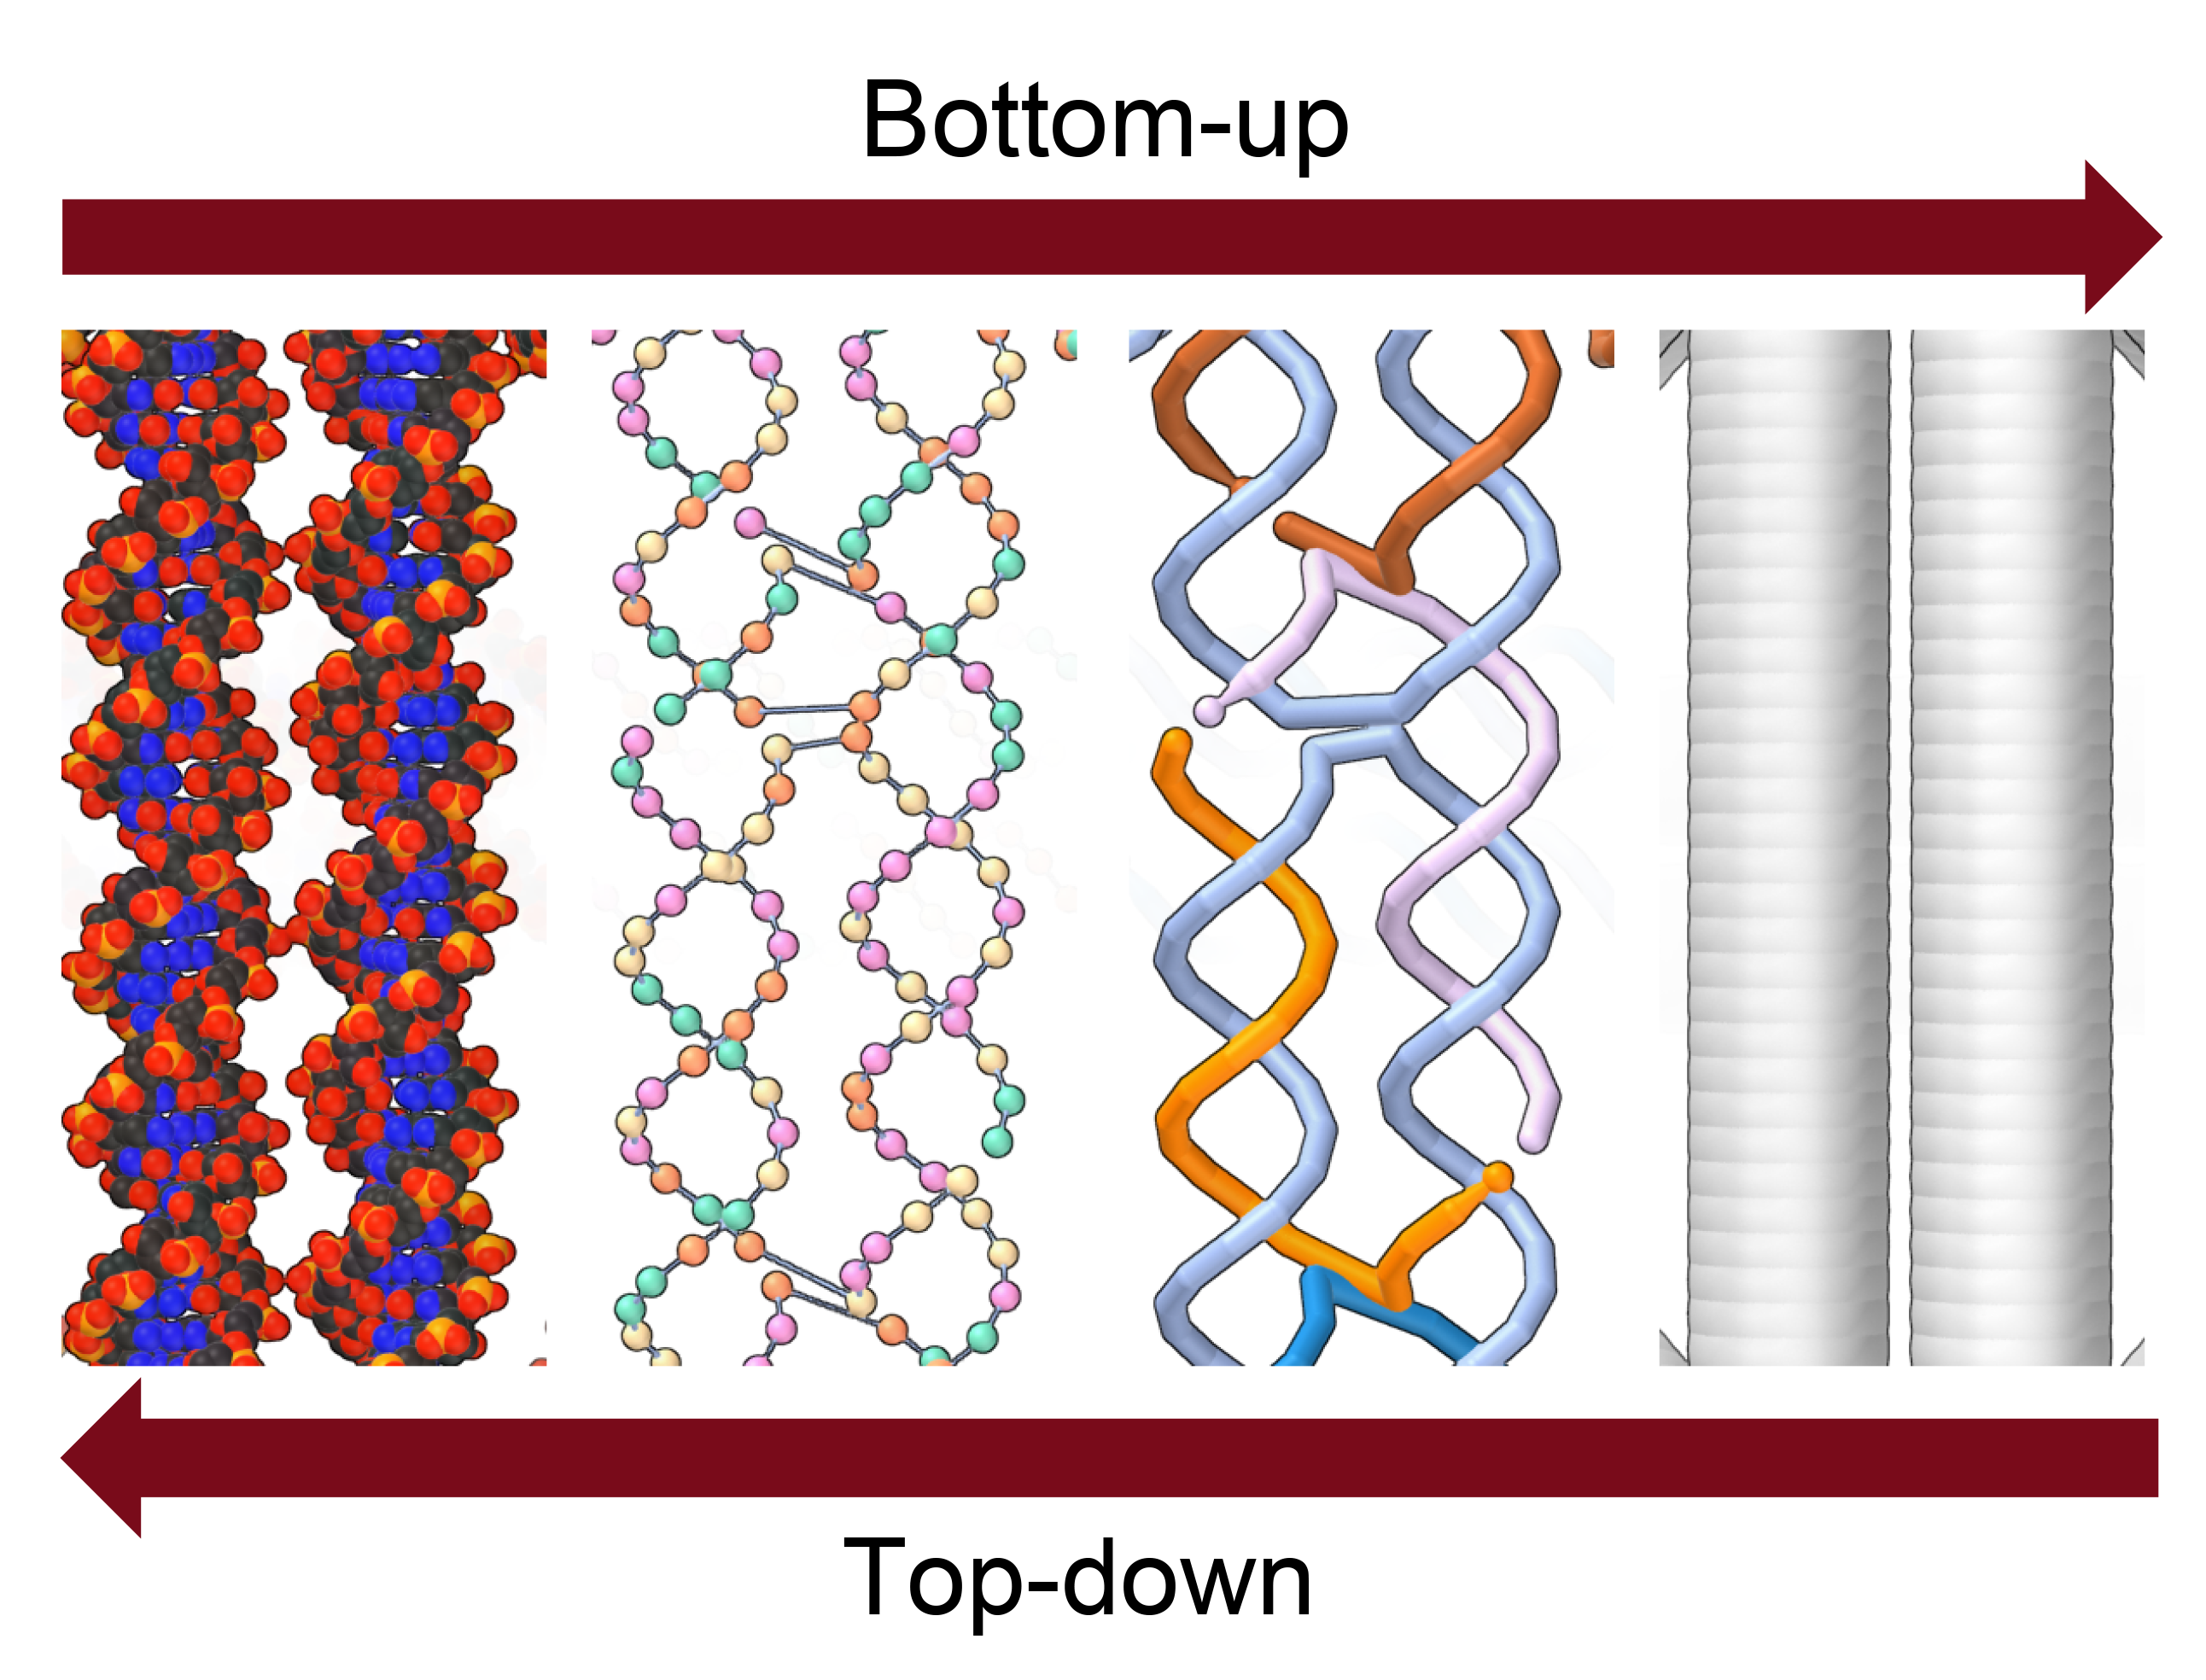 Logic model for DNA Nanostructures